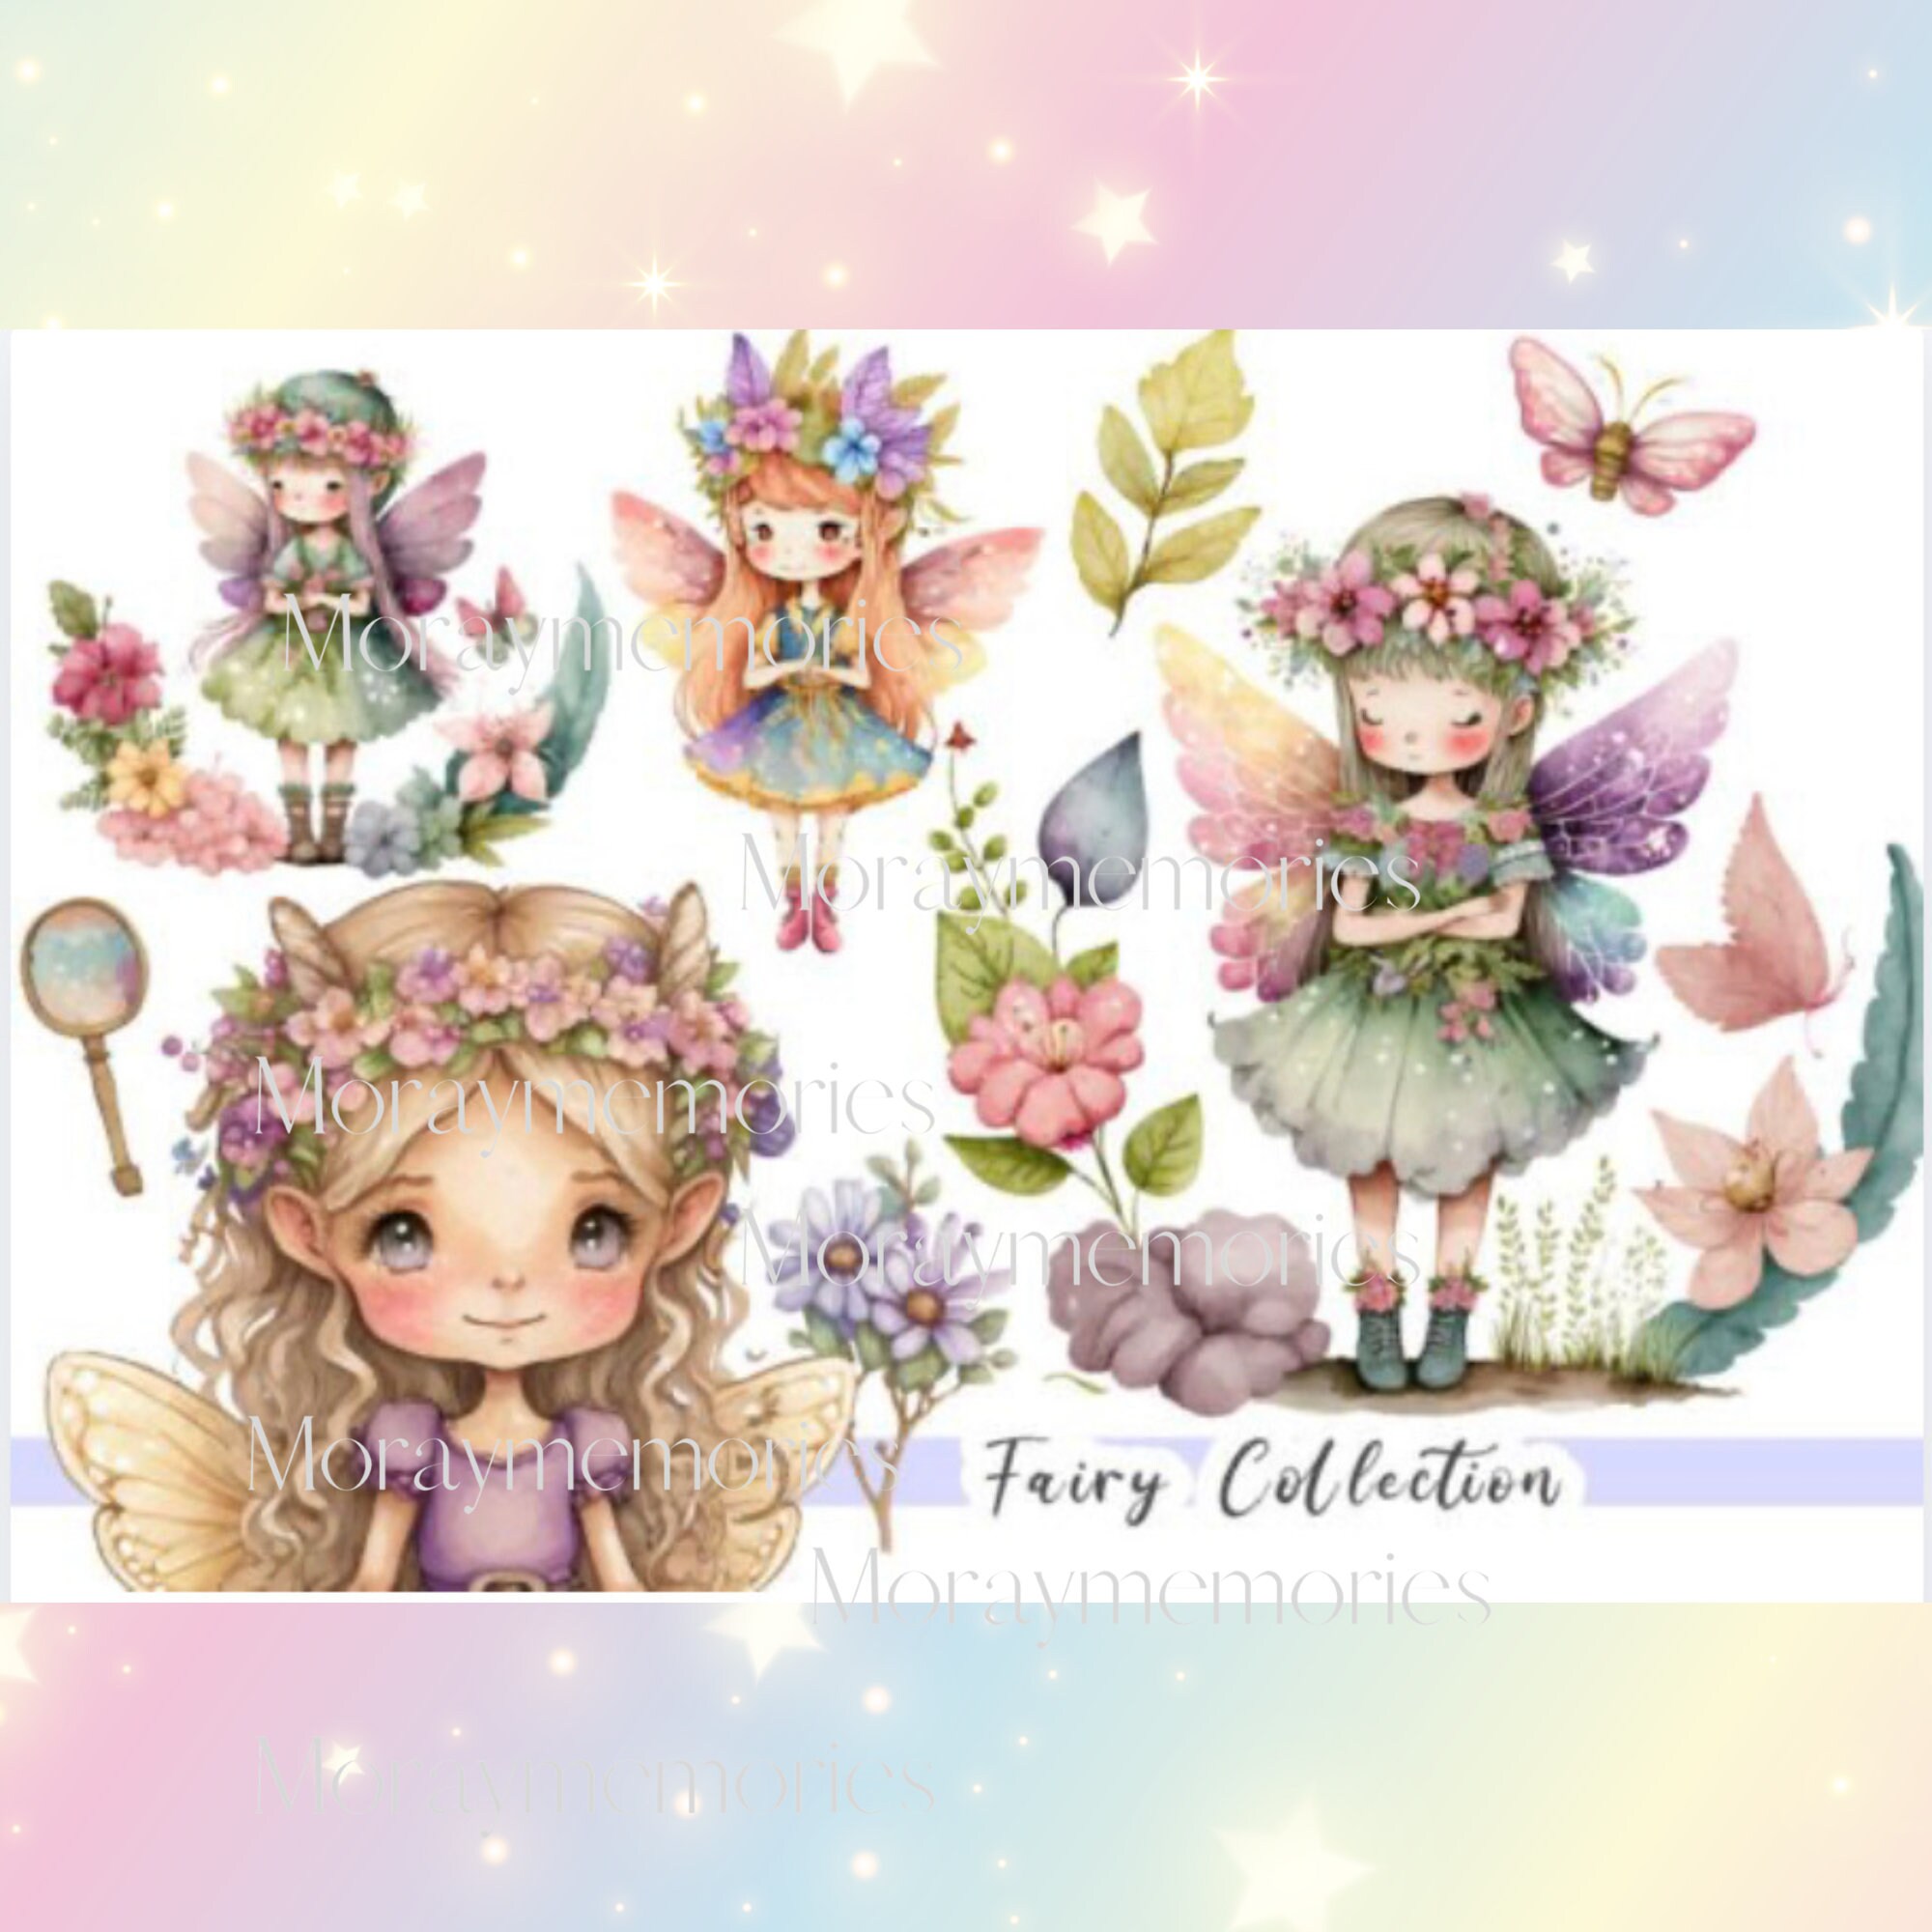 A knotty fairy